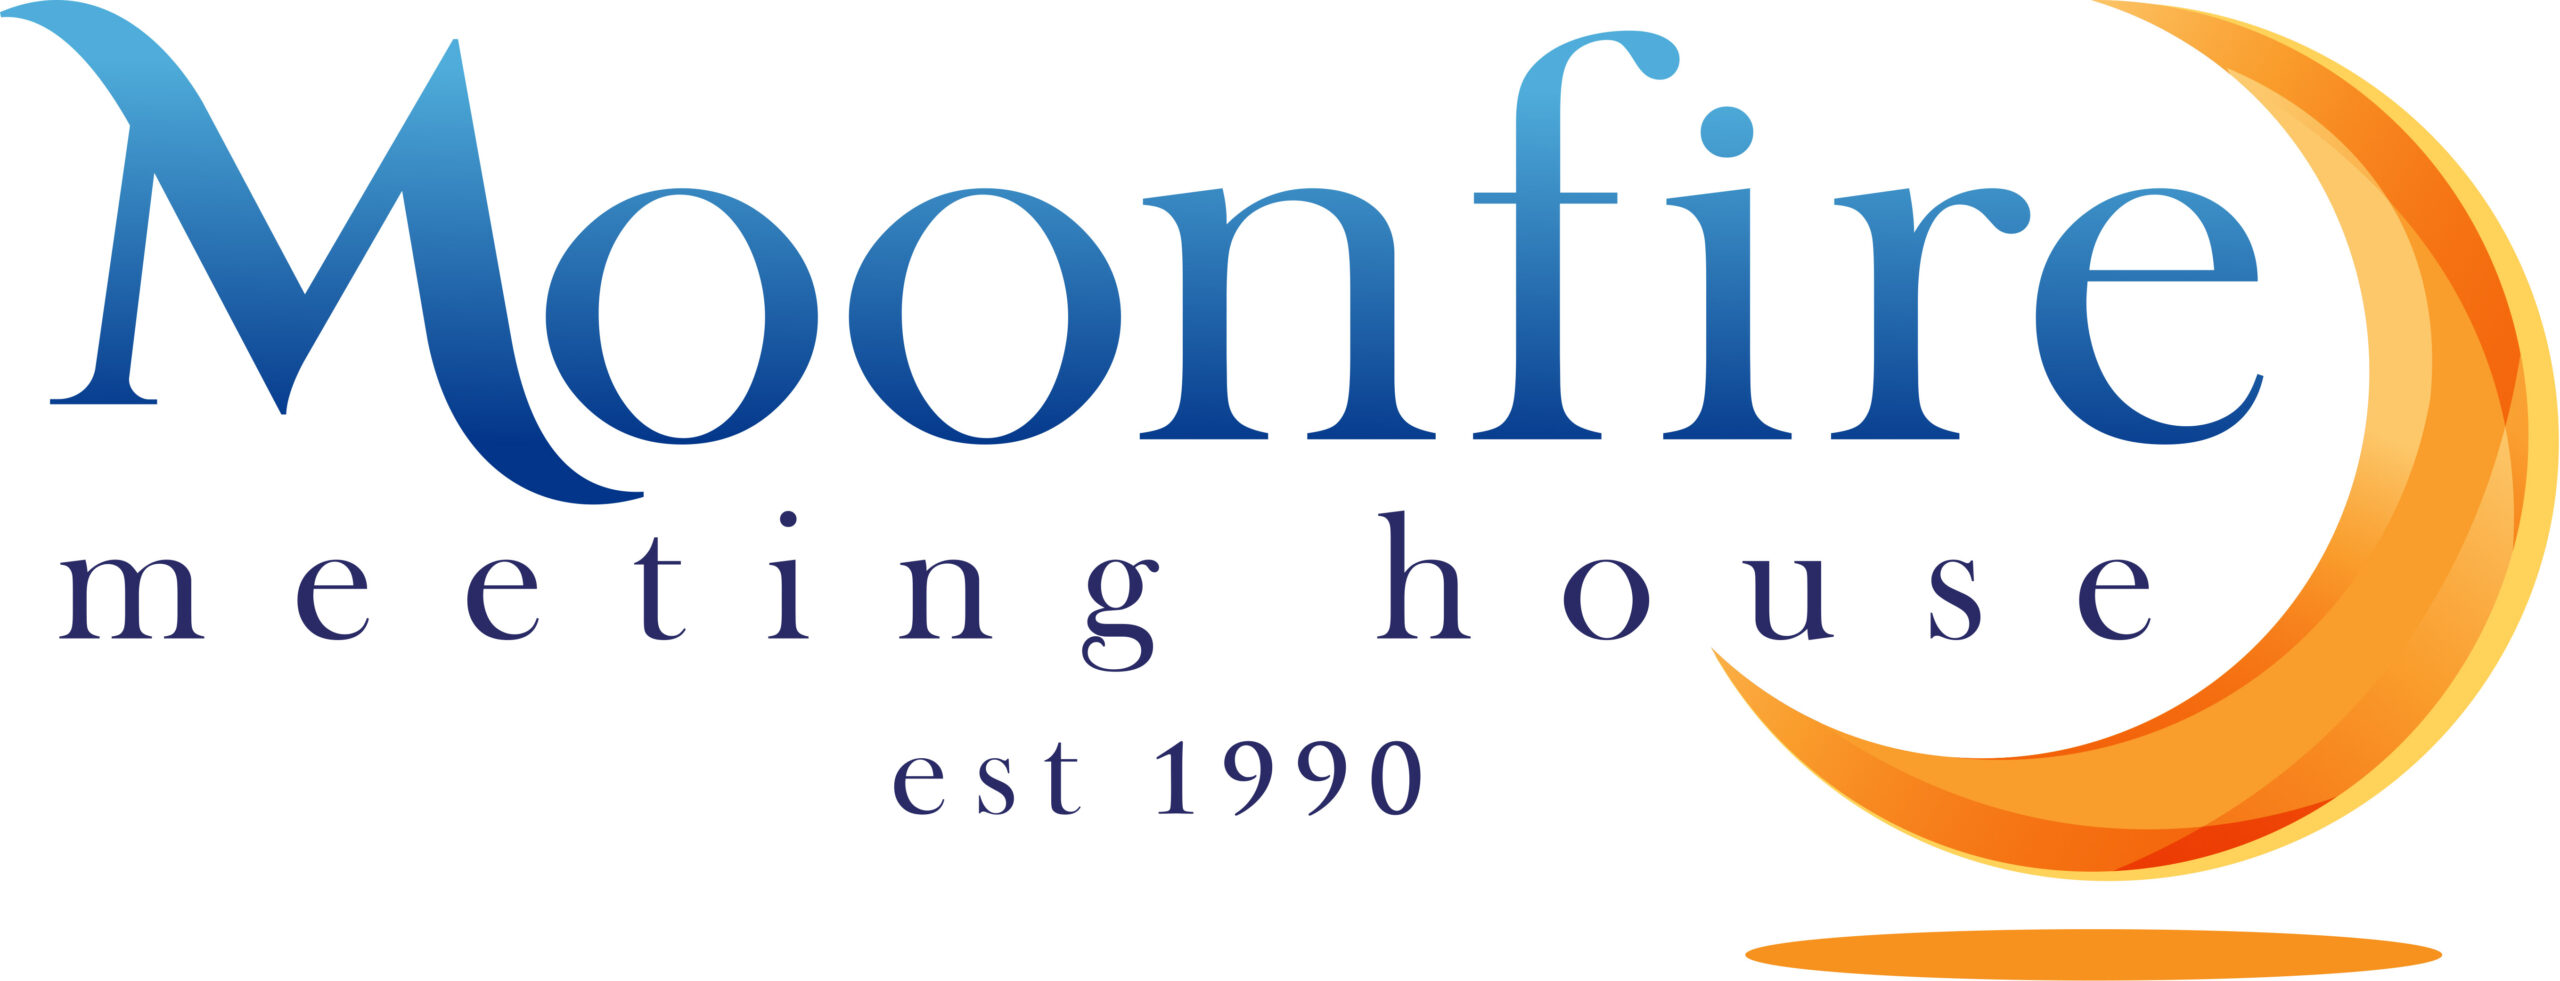 Moonfire-Meeting-House-Logo